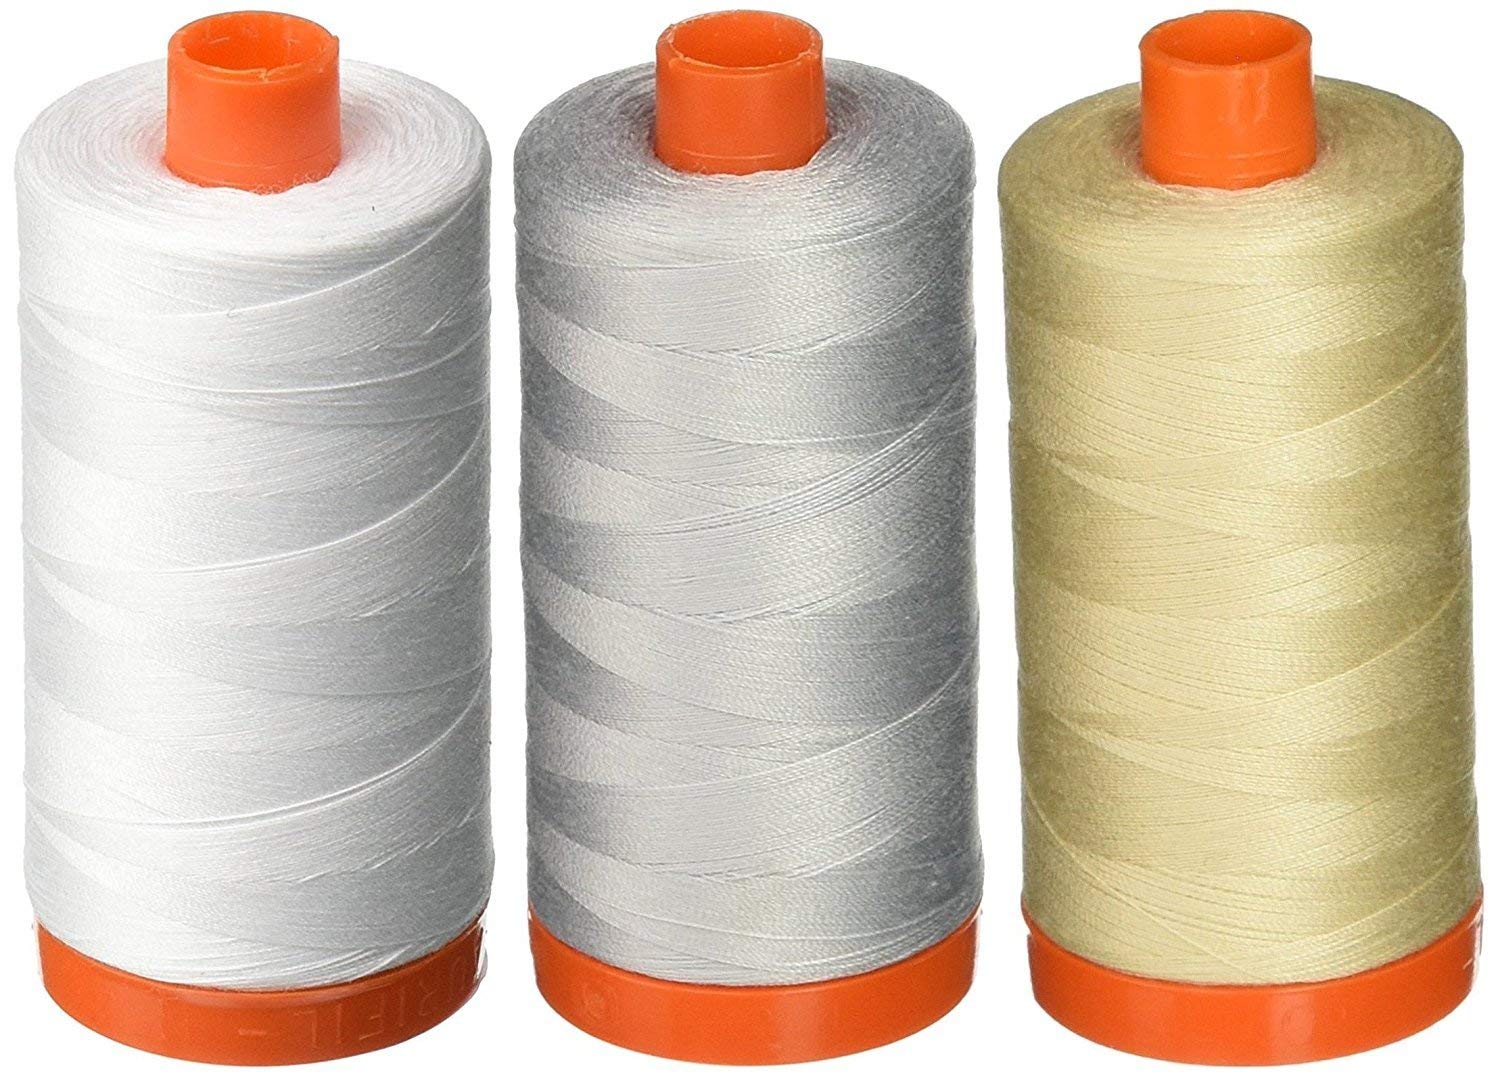 Aurifil Mako 50 wt Cotton Thread - White + Dove + Light Beige - Bundle of 3 Spools